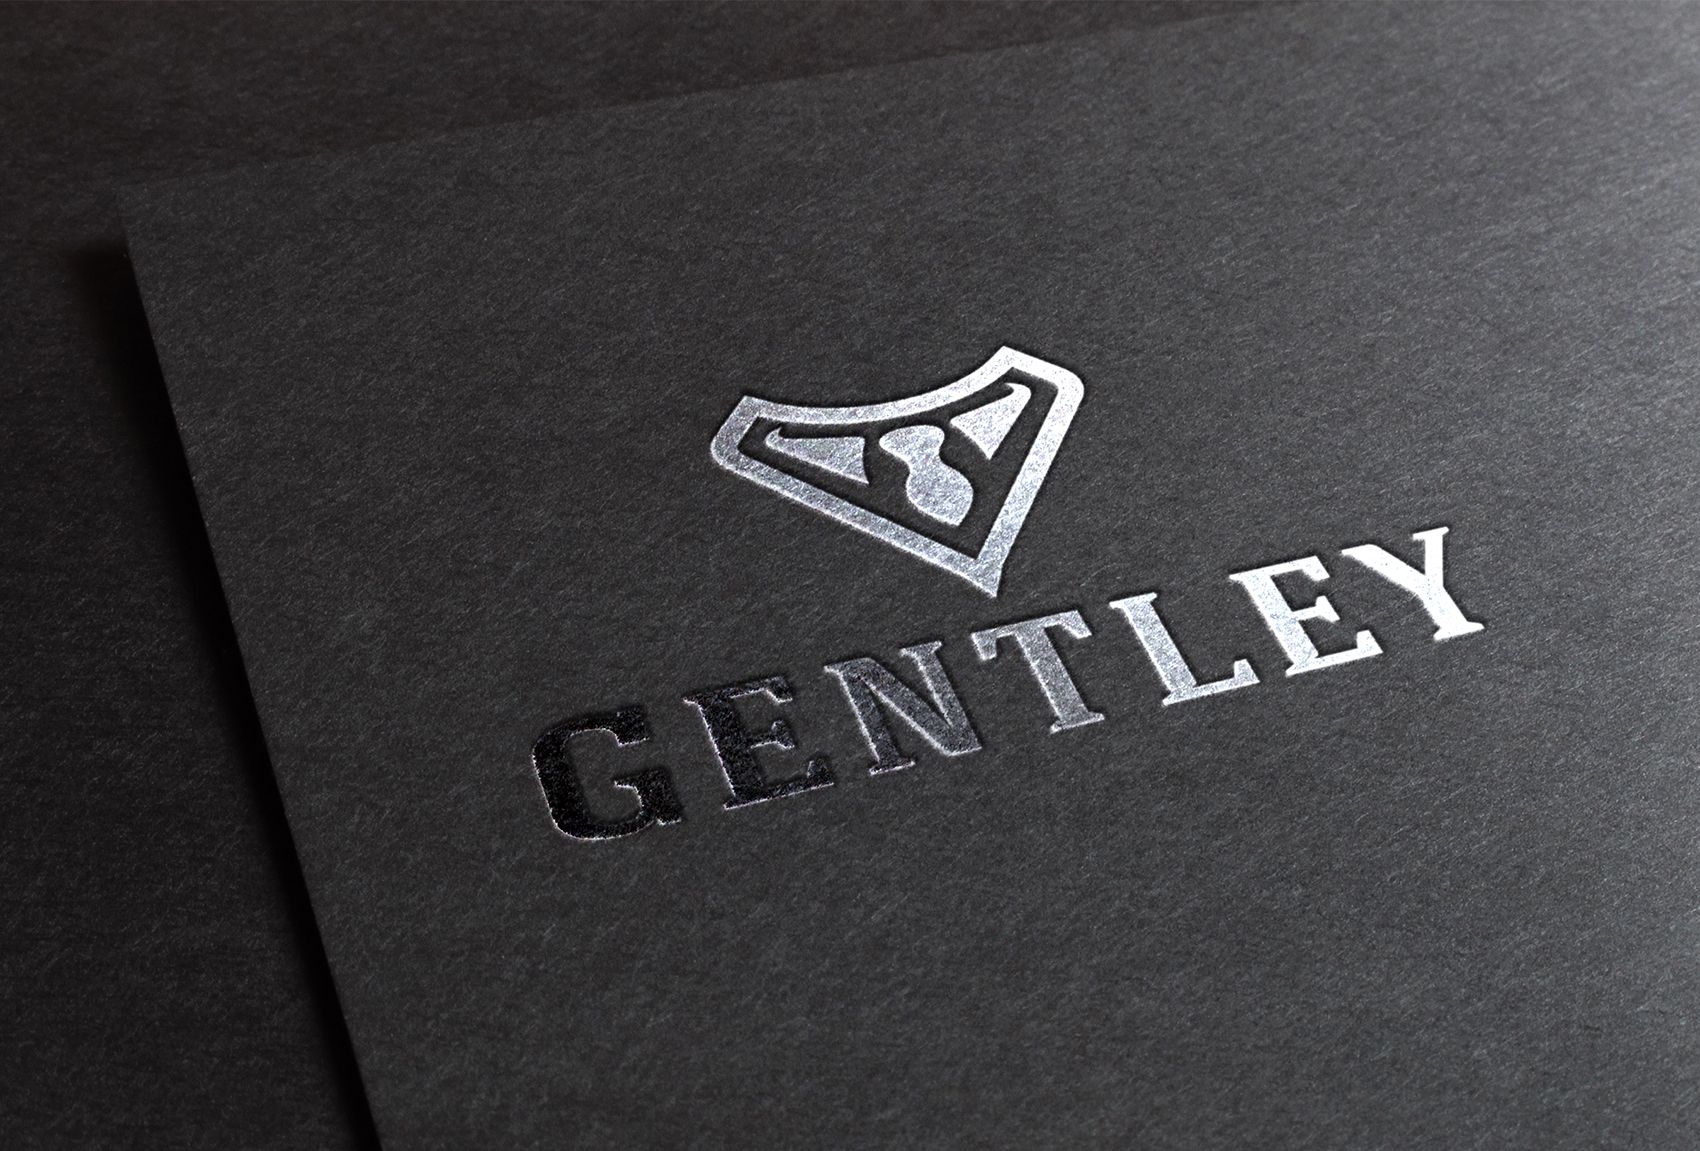 Логотип для Логотип для Gentley.ru (мужские аксессуары) - дизайнер Teriyakki